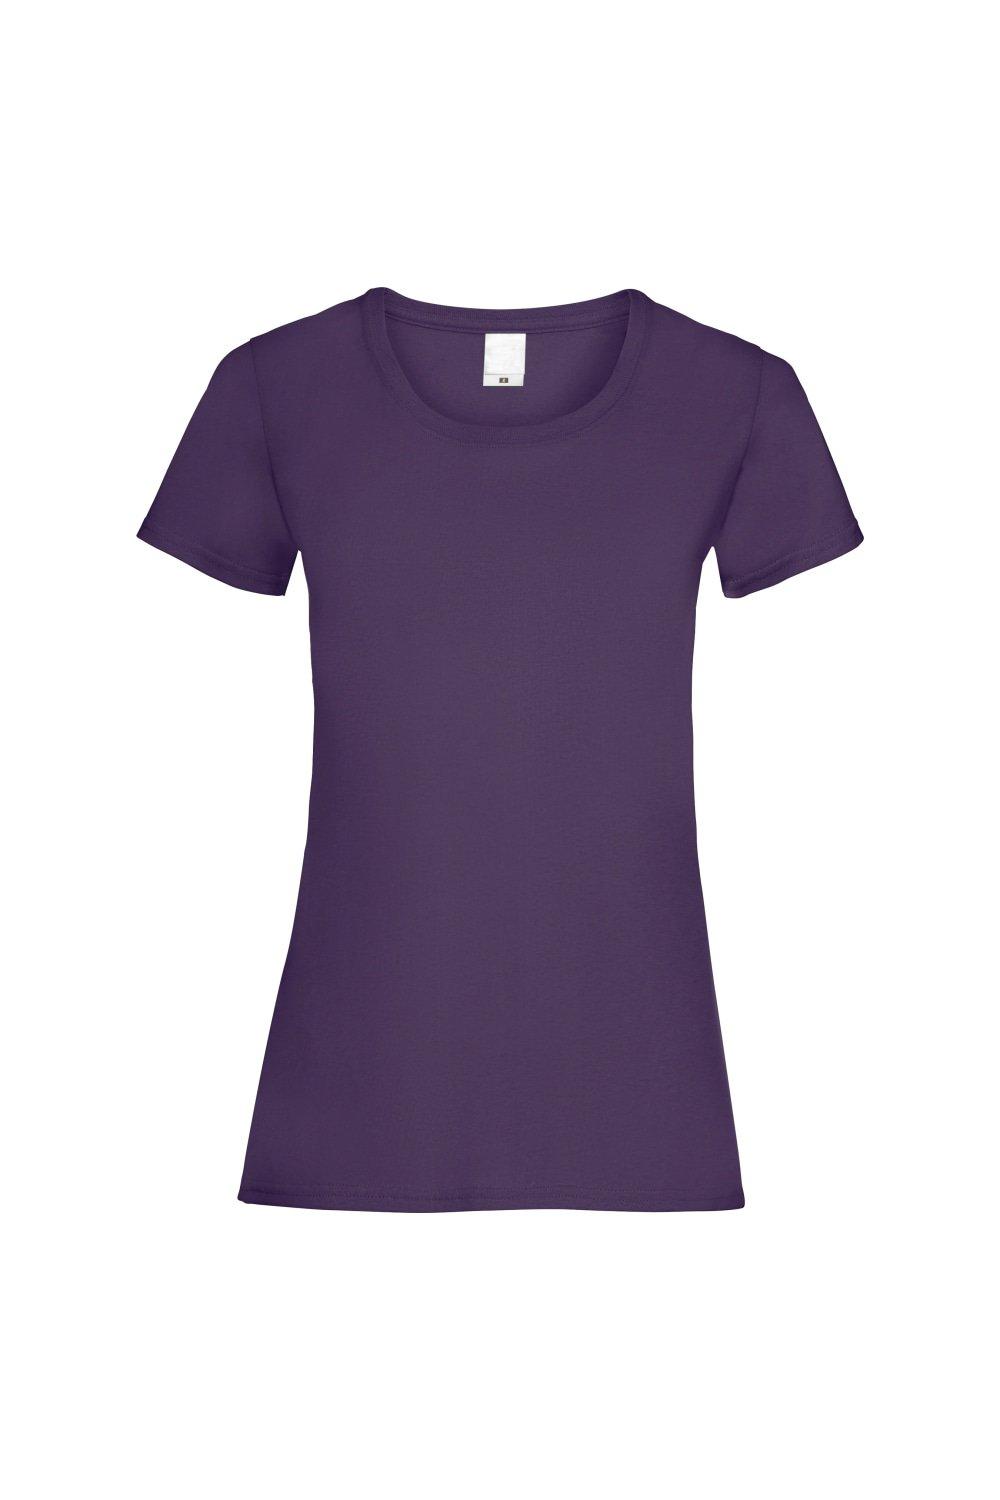 Повседневная футболка с короткими рукавами Value Universal Textiles, фиолетовый повседневная футболка value с длинным рукавом universal textiles белый